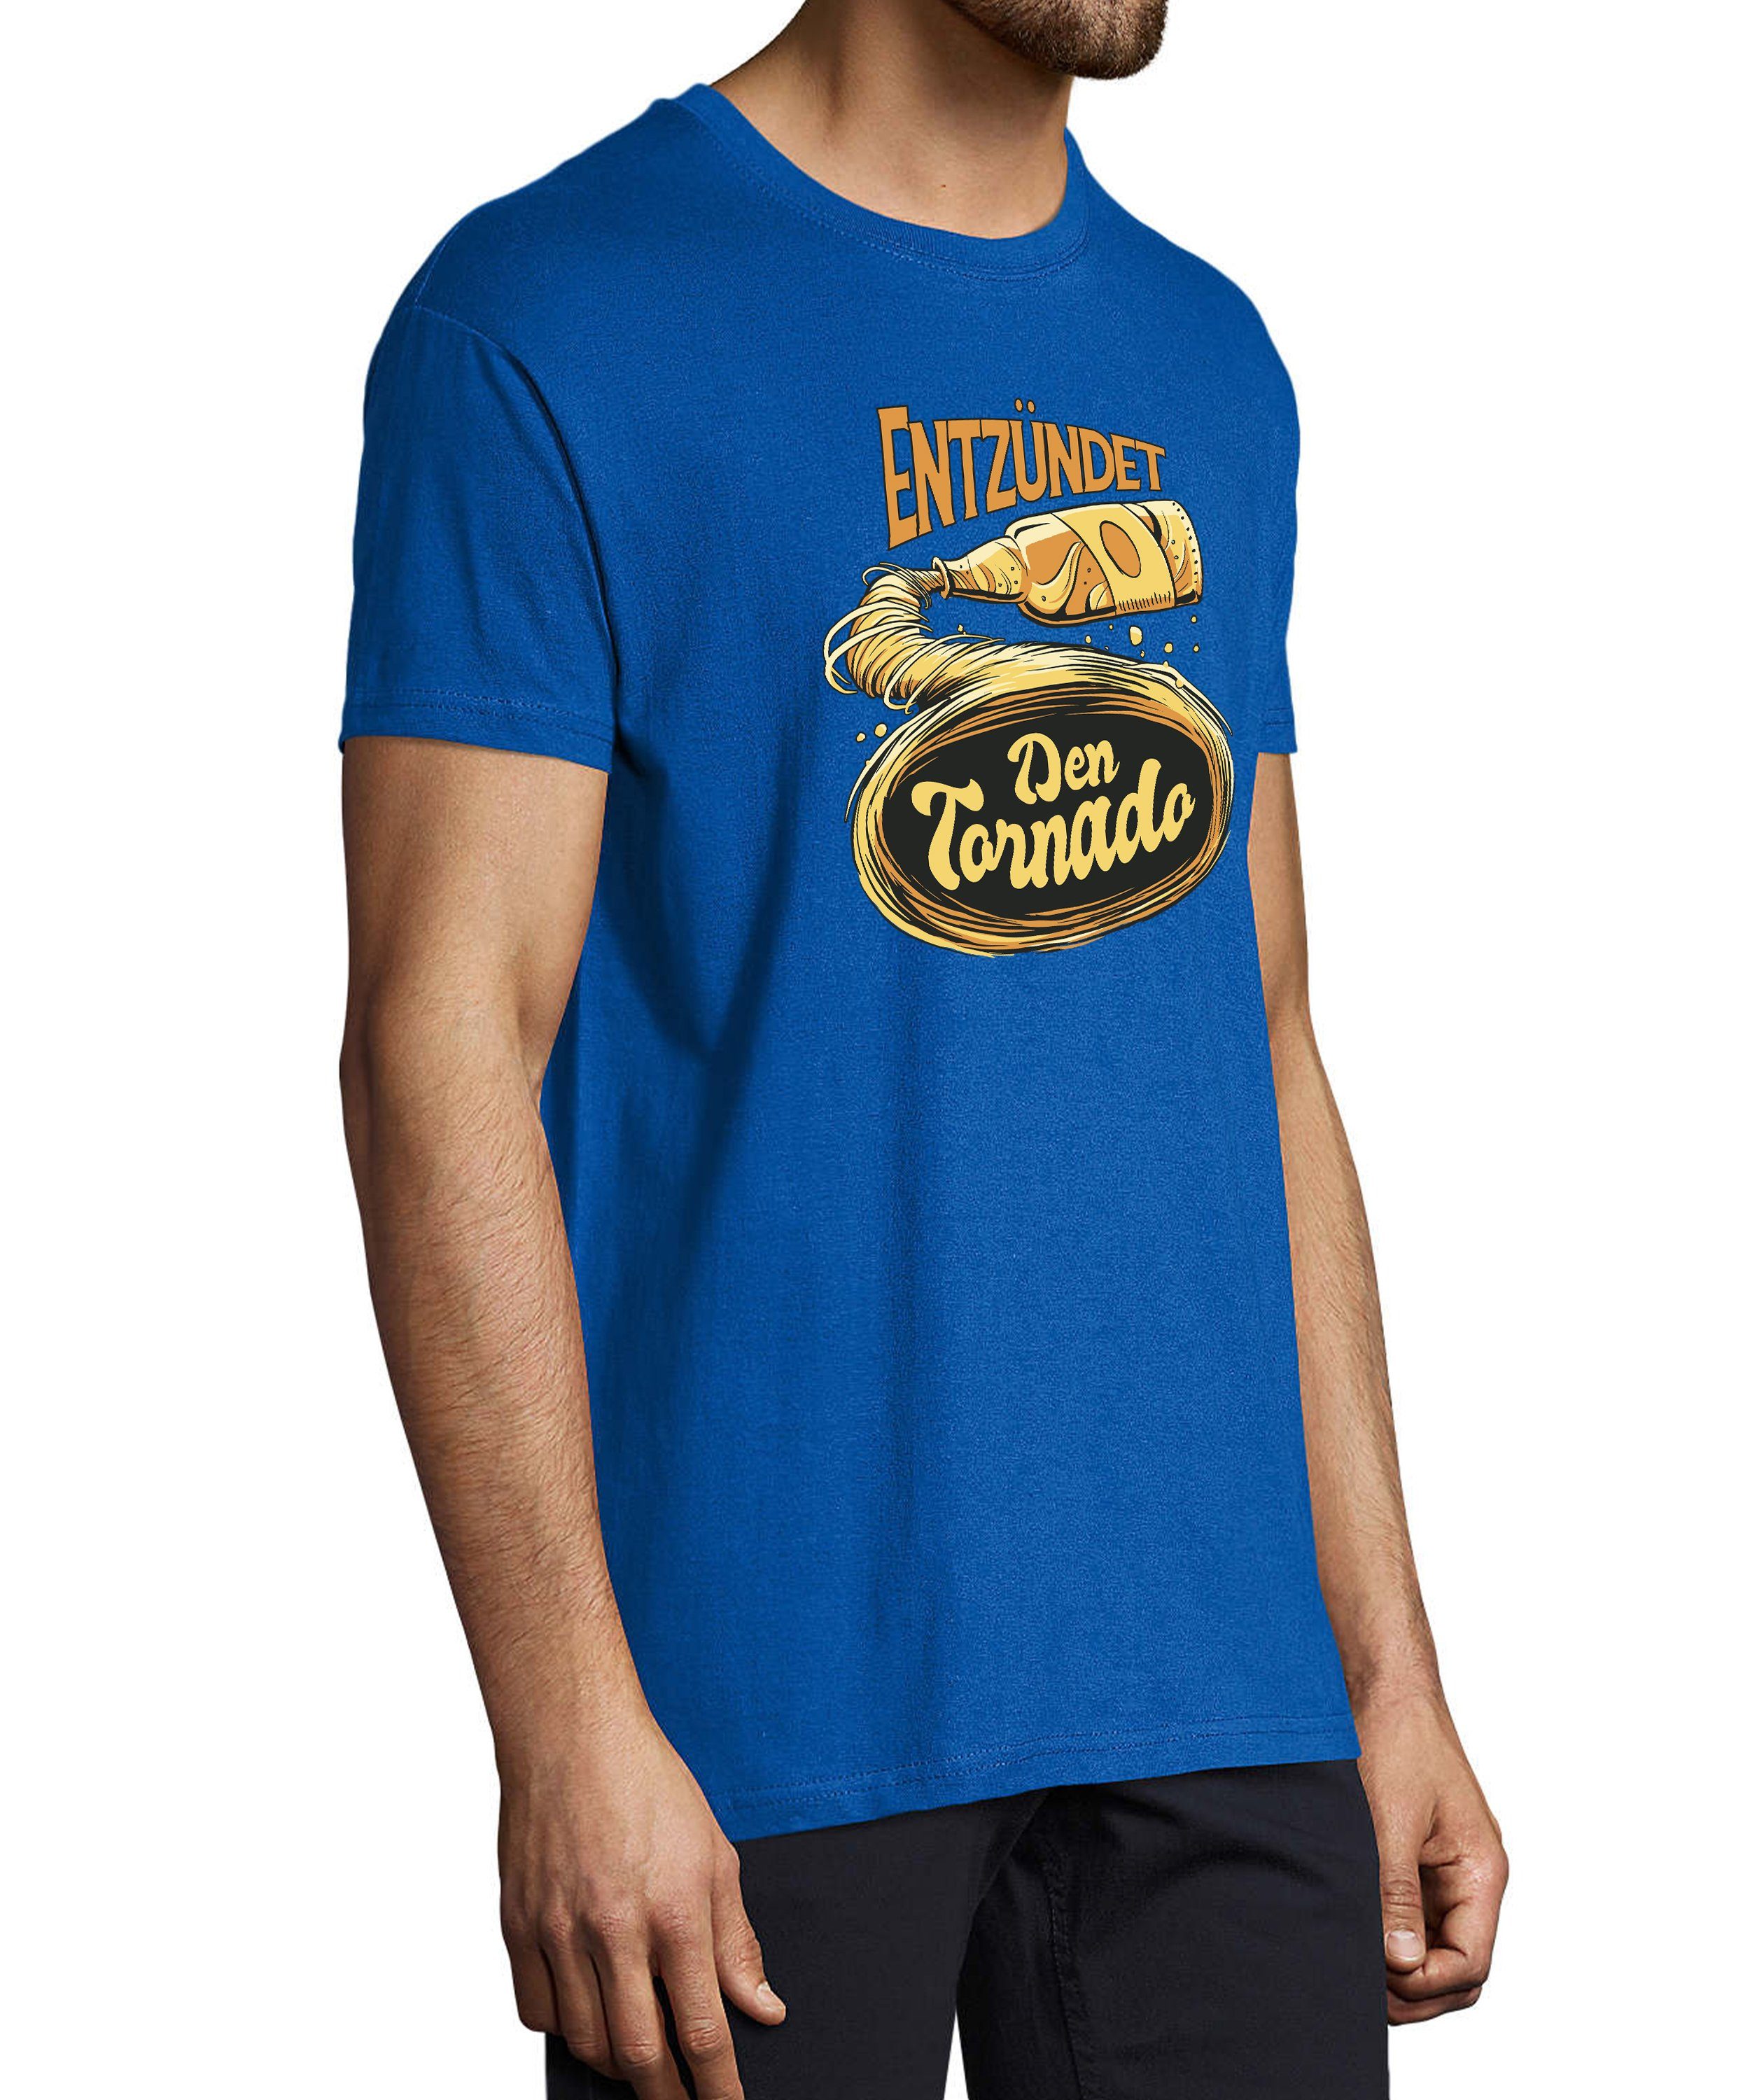 MyDesign24 T-Shirt Herren Fun Tornado - Oktoberfest Shirt Trinkshirt Entzündet Fit, Regular Aufdruck Baumwollshirt Print blau i302 mit royal den